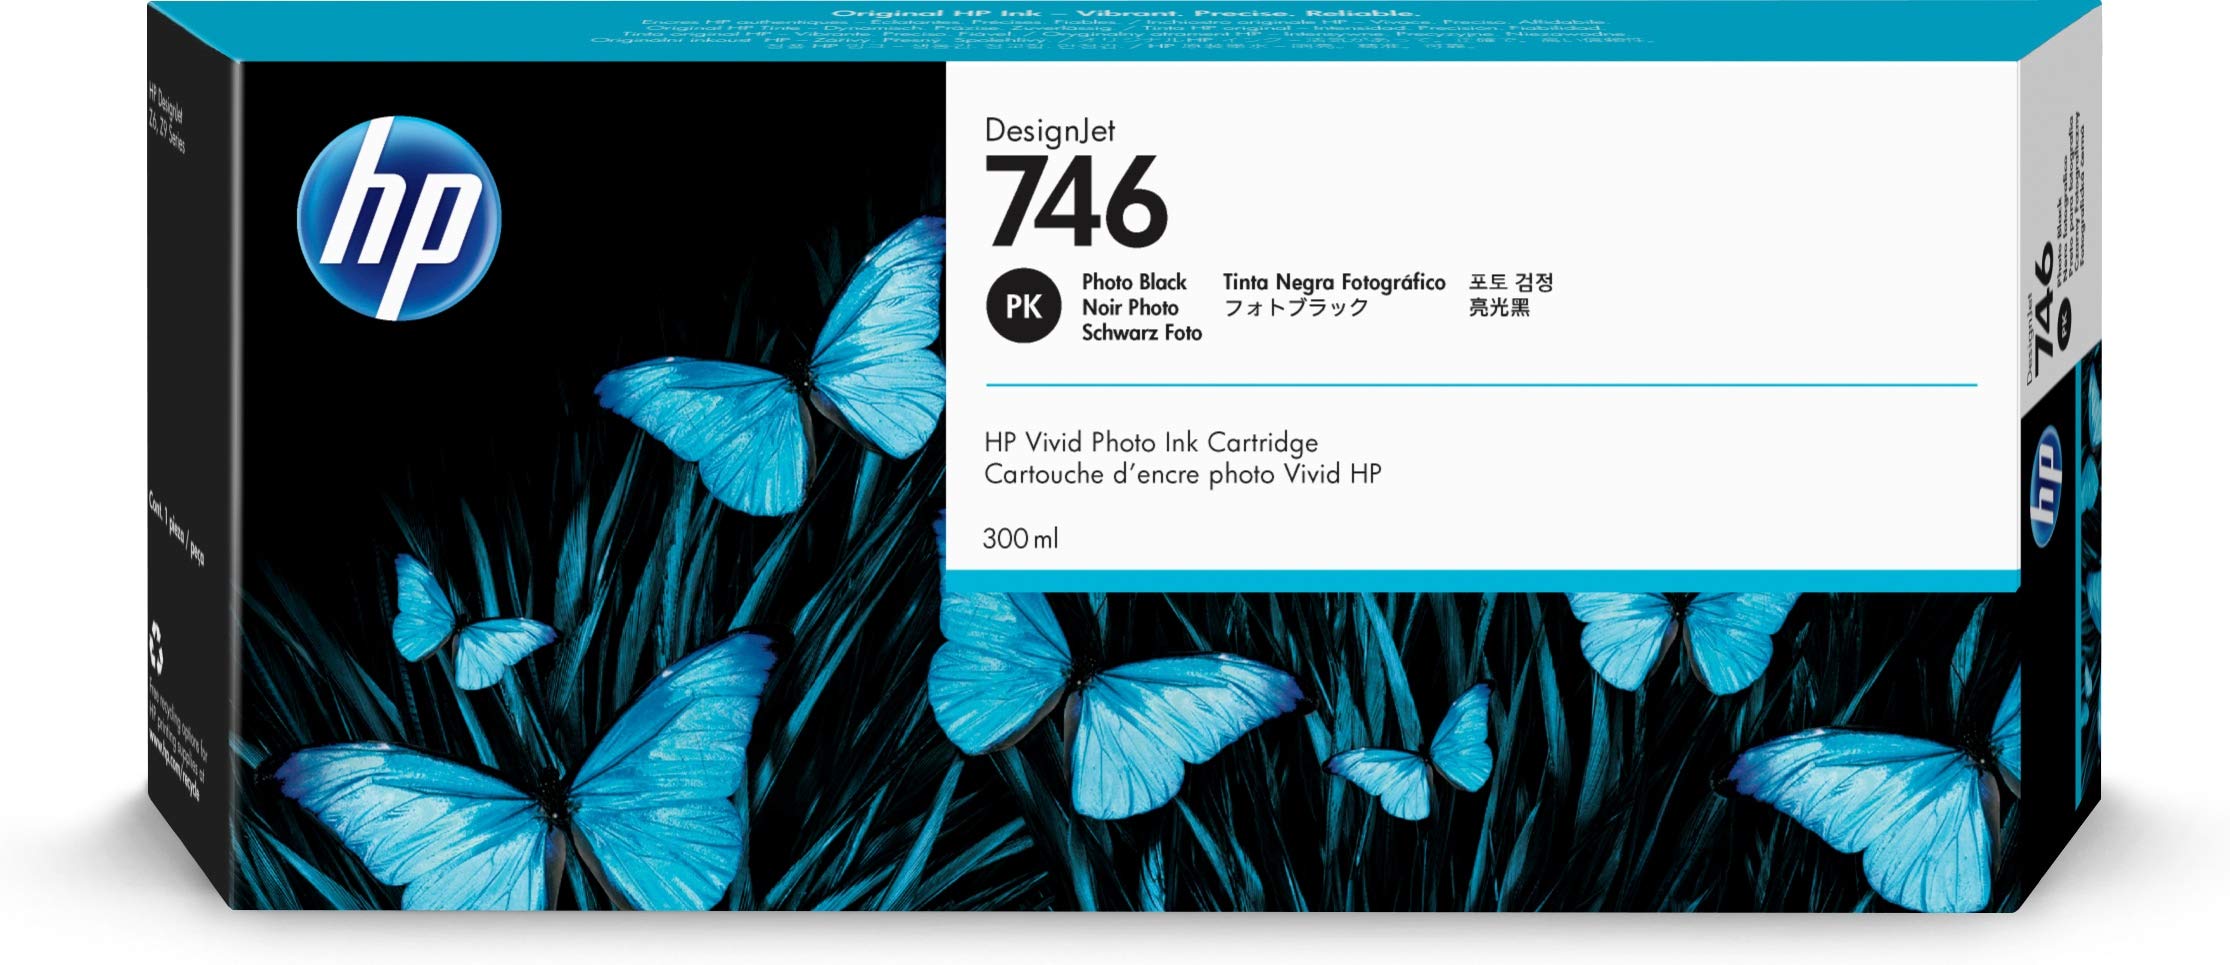  HP डिज़ाइनजेट Z6 और Z9+ बड़े प्रारूप प्रिंटर के लिए 746 फोटो ब्लैक 300-एमएल असली इंक...